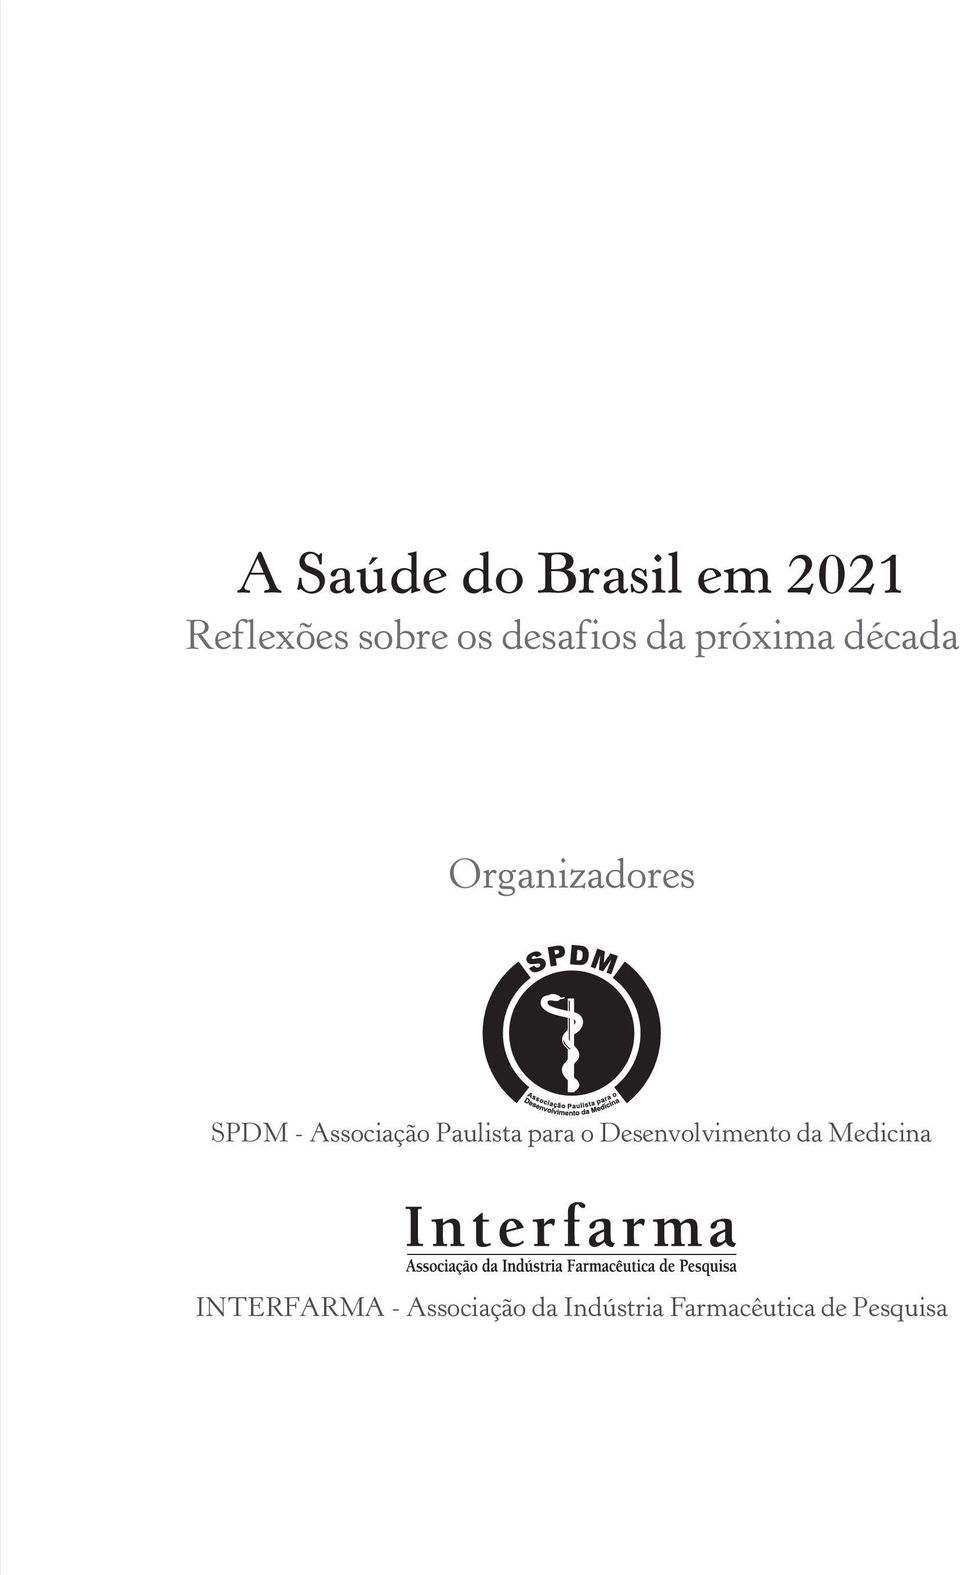 Associação Paulista para o Desenvolvimento da